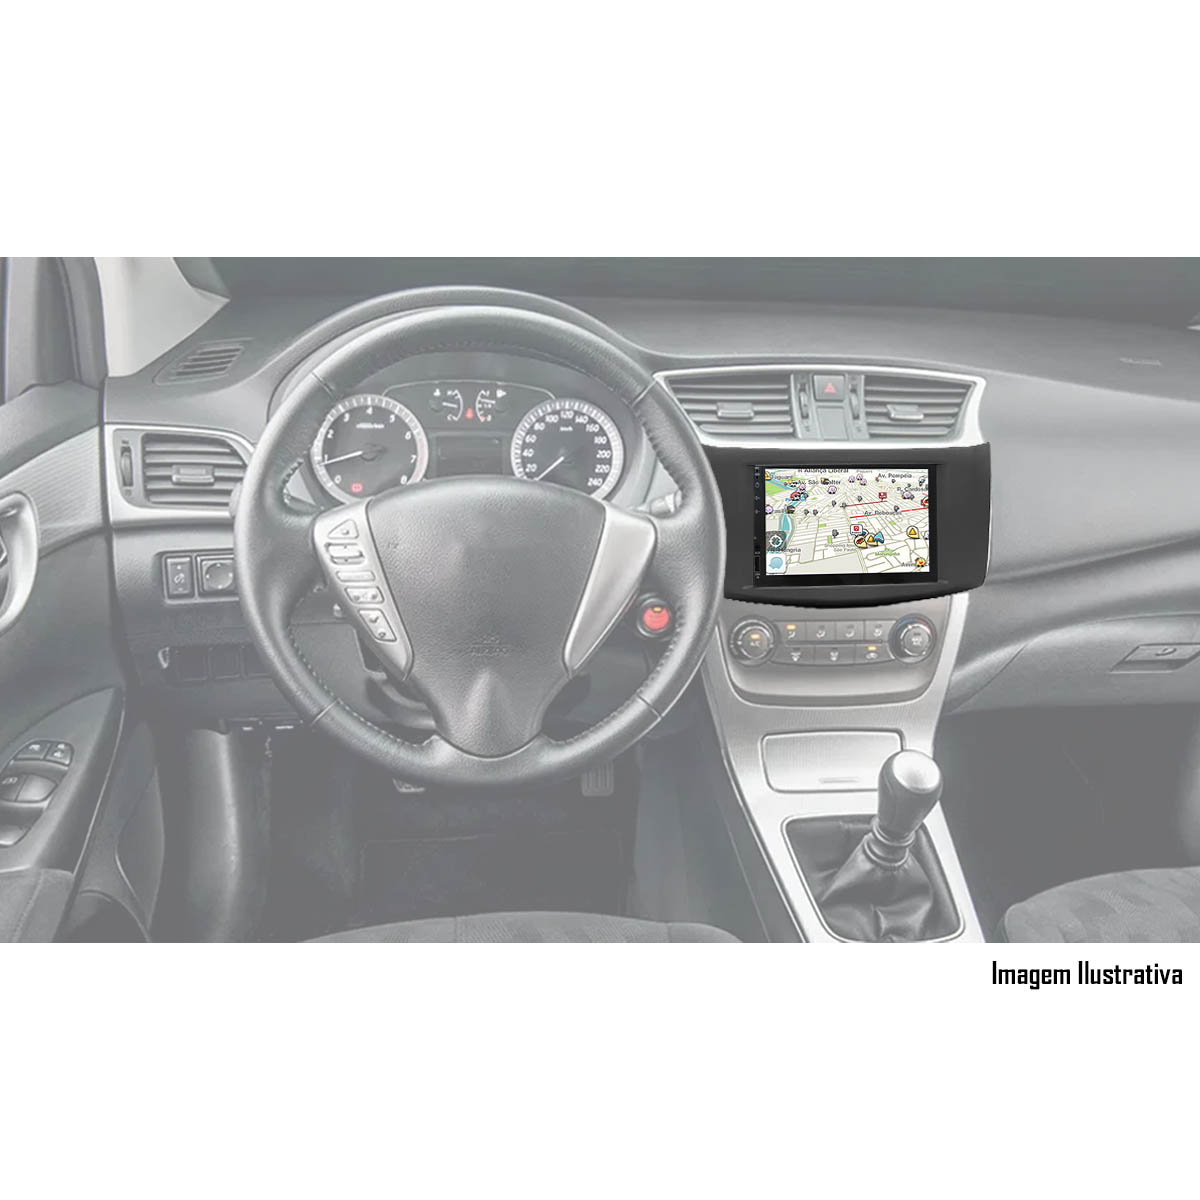 Multimídia Nissan Sentra 2014 em Diante Espelhamento Bluetooth USB SD Card + Moldura + Câmera Borboleta + Chicote + Adaptador de Antena